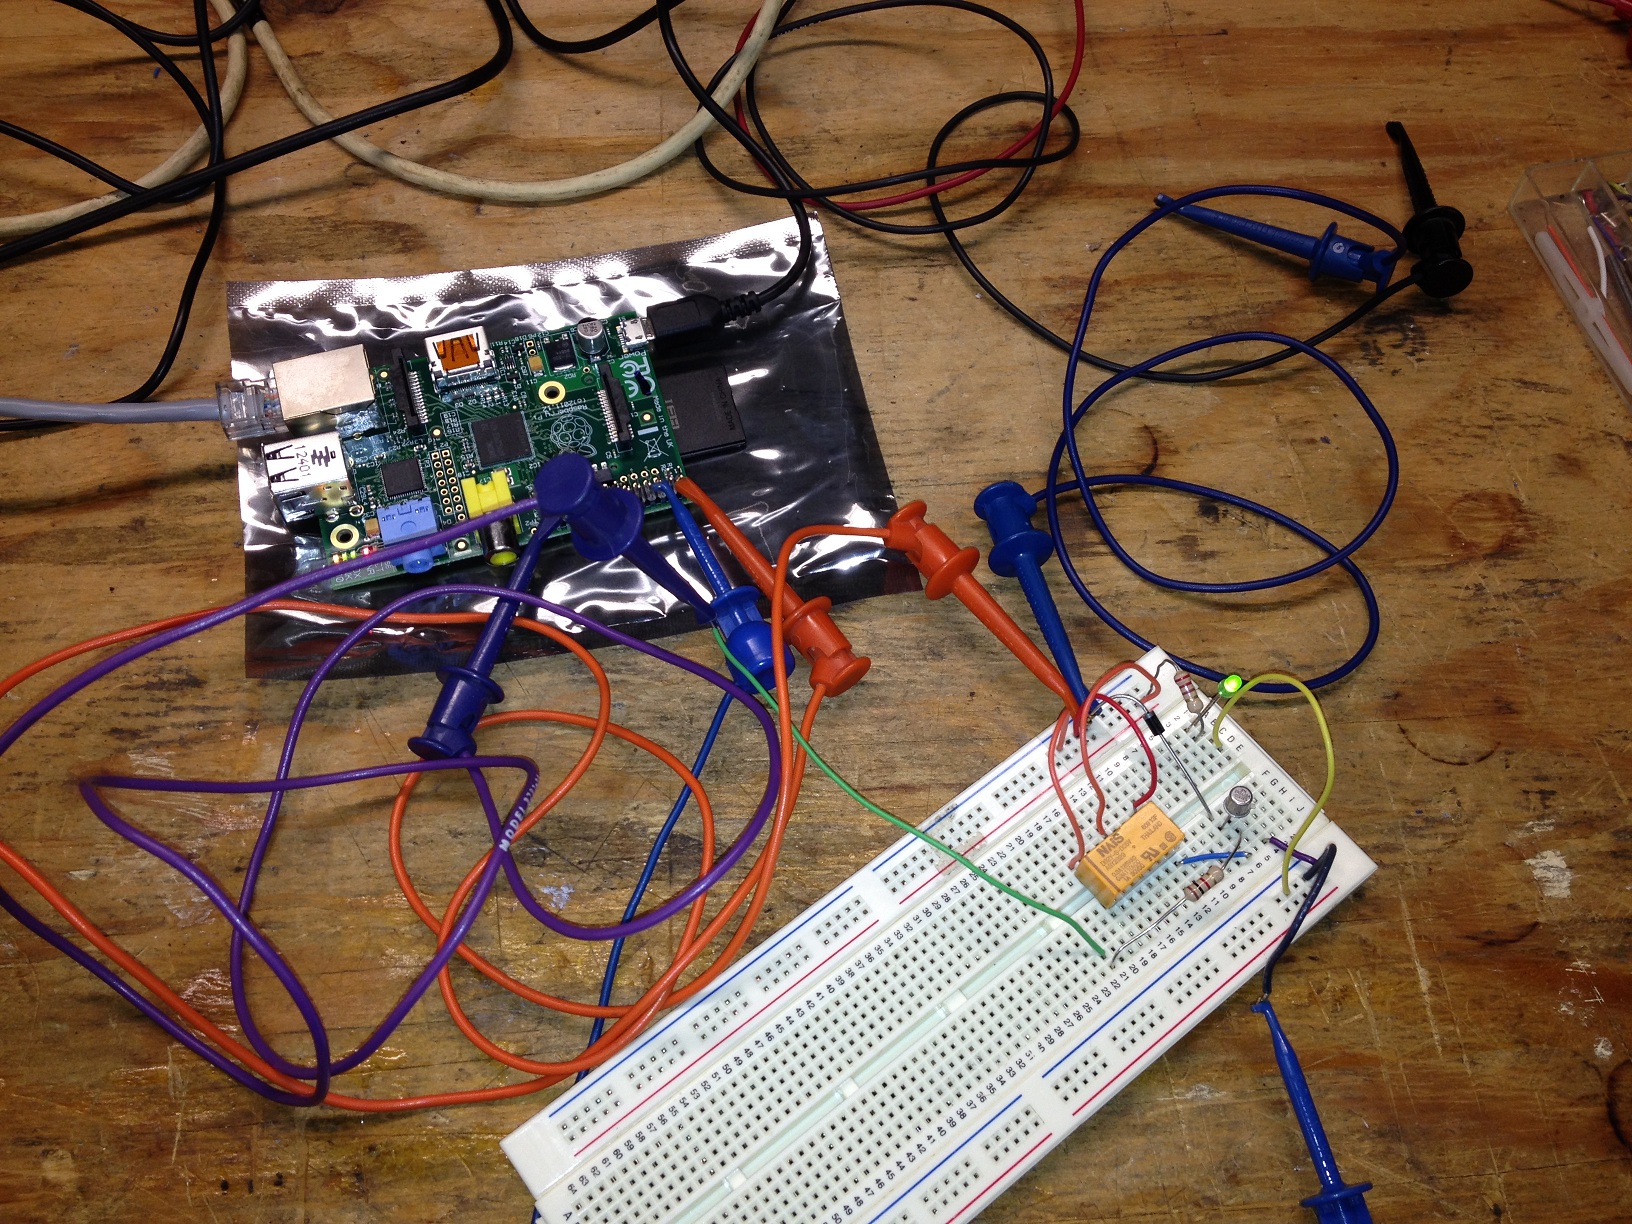 Prototype test circuit